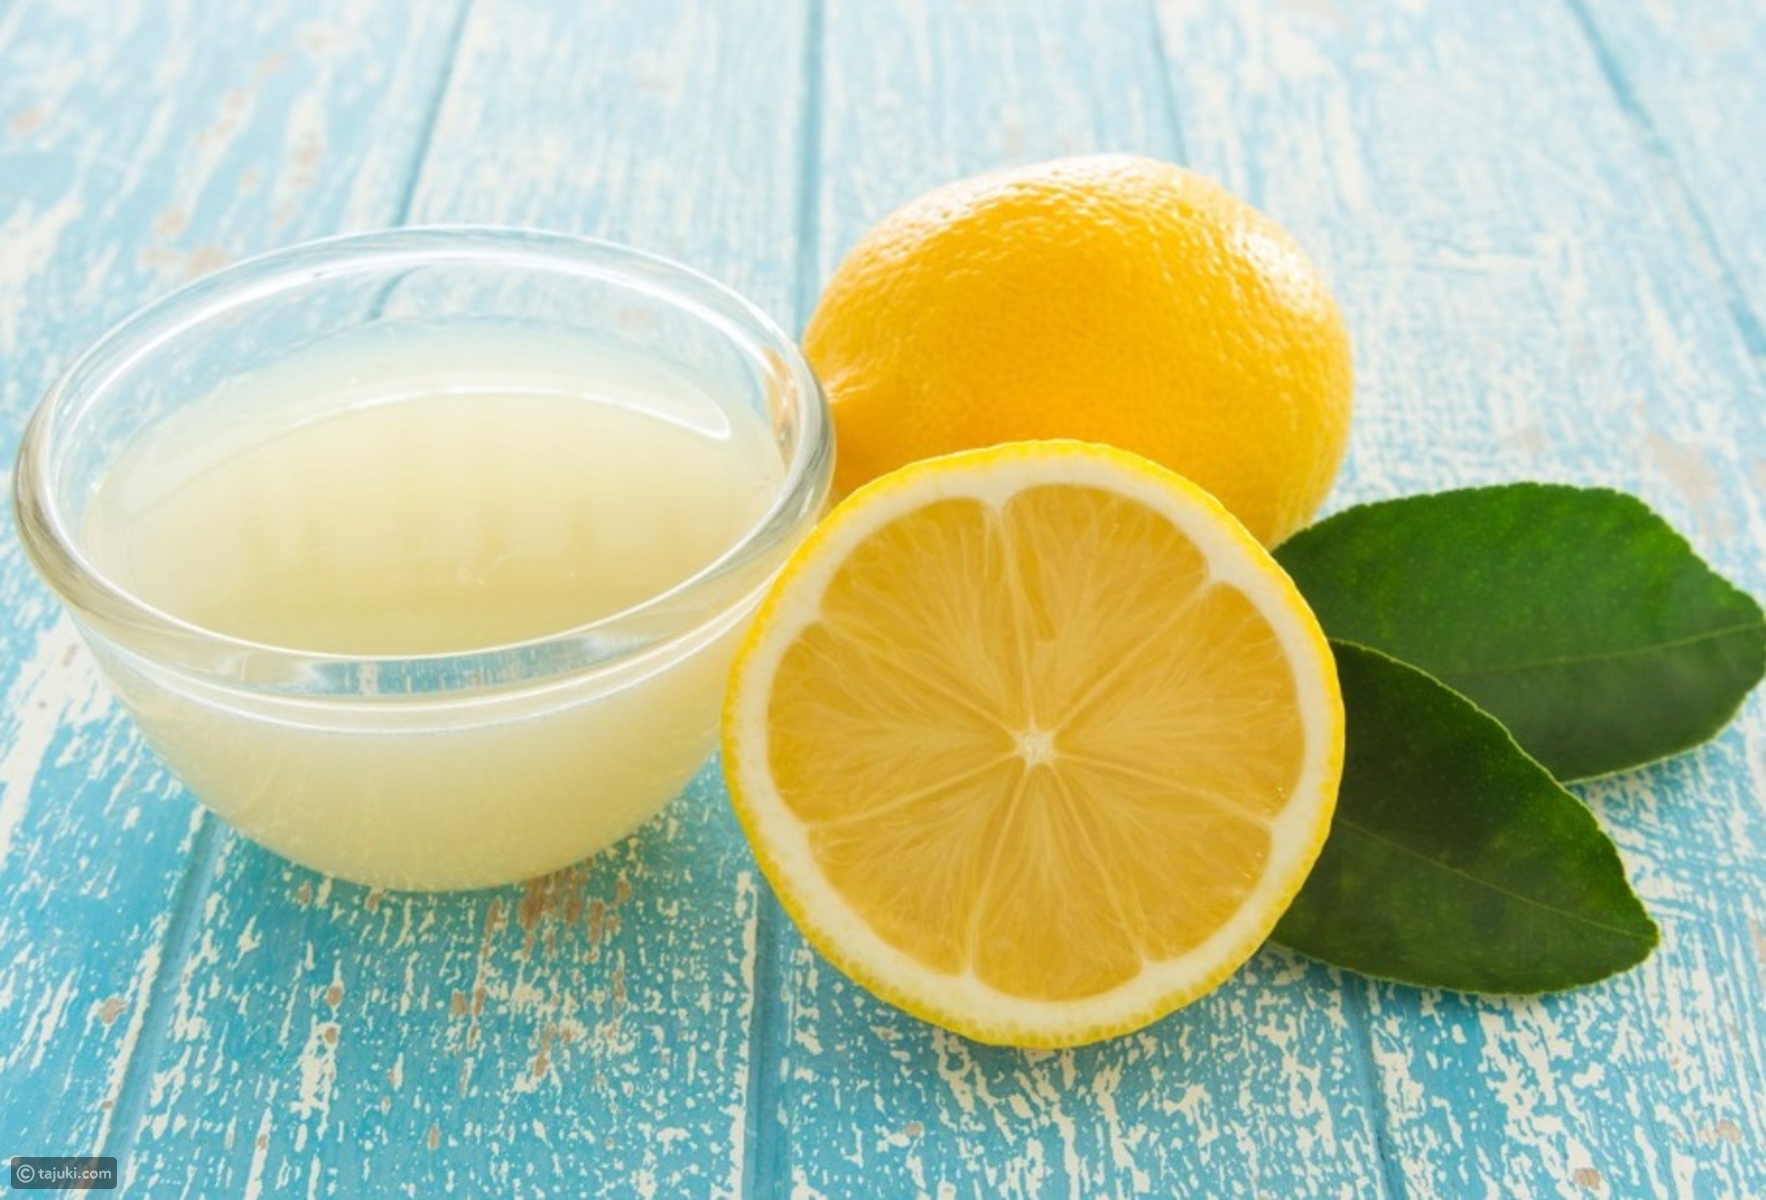 Сок лимона вода корица сода. Лимонный сок. Лимон. Свежевыжатый лимонный сок. Лимон и лимонный сок.